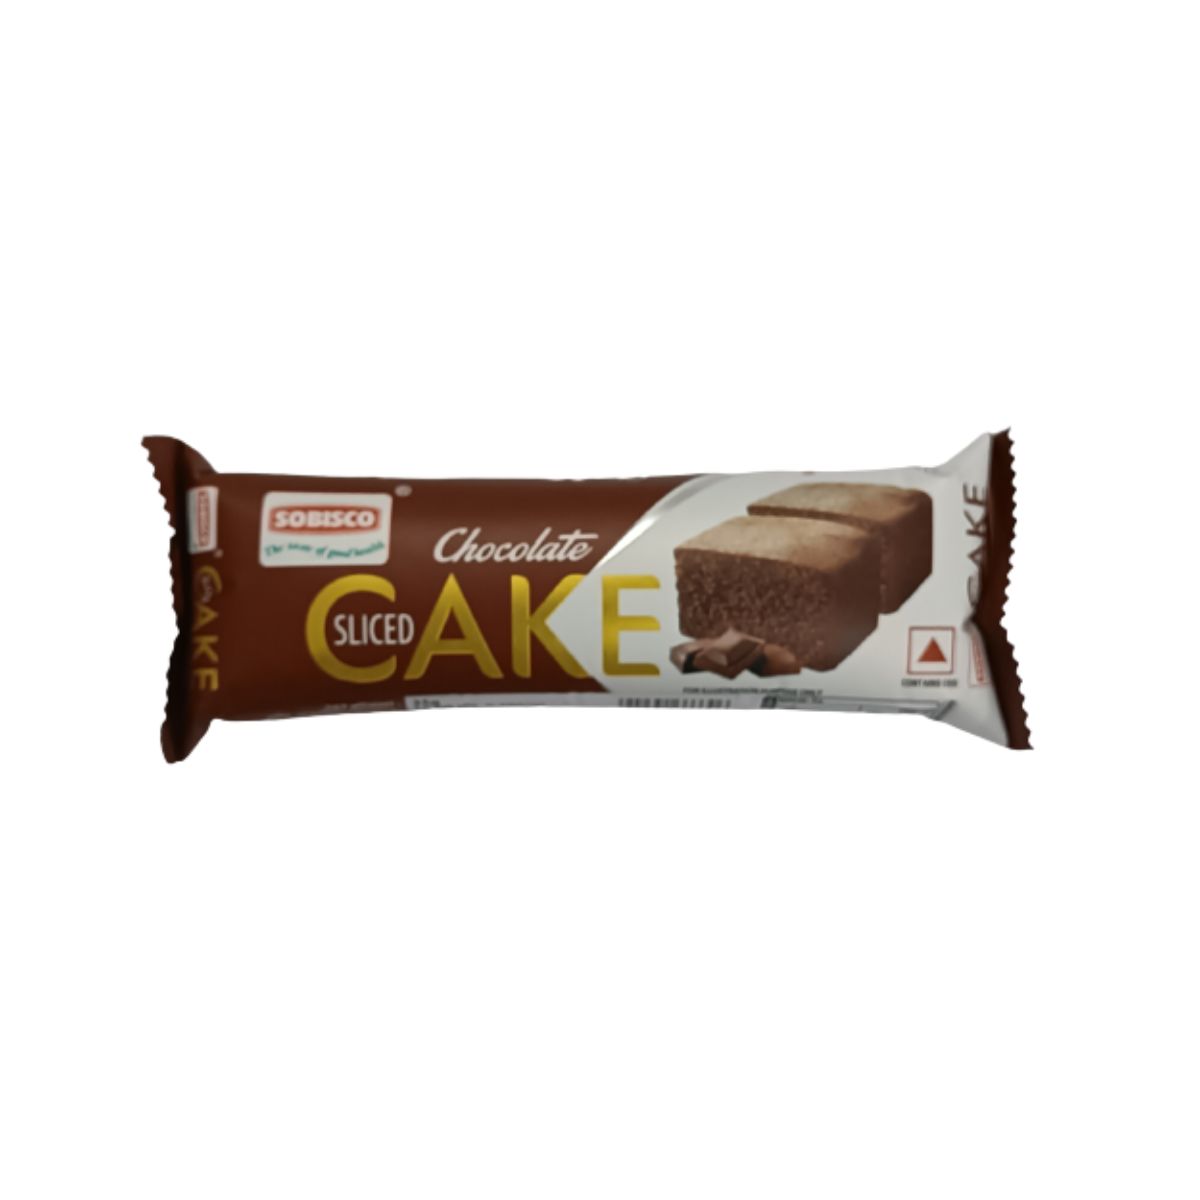 Sobisco Slice Cake - Chocolate - 35g